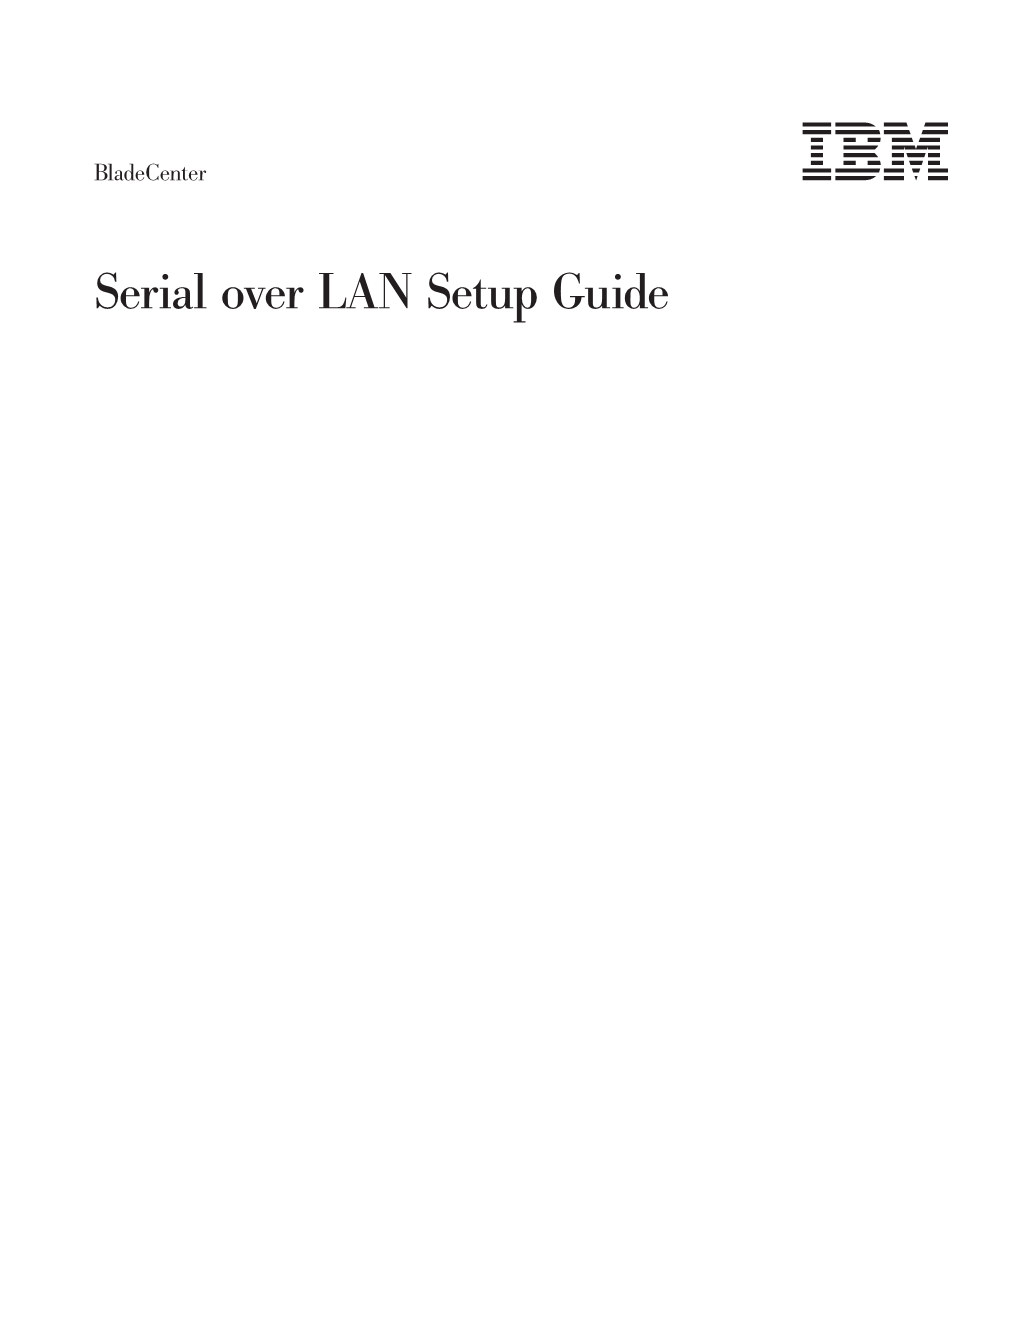 Bladecenter Serial Over LAN (SOL) Setup Guide